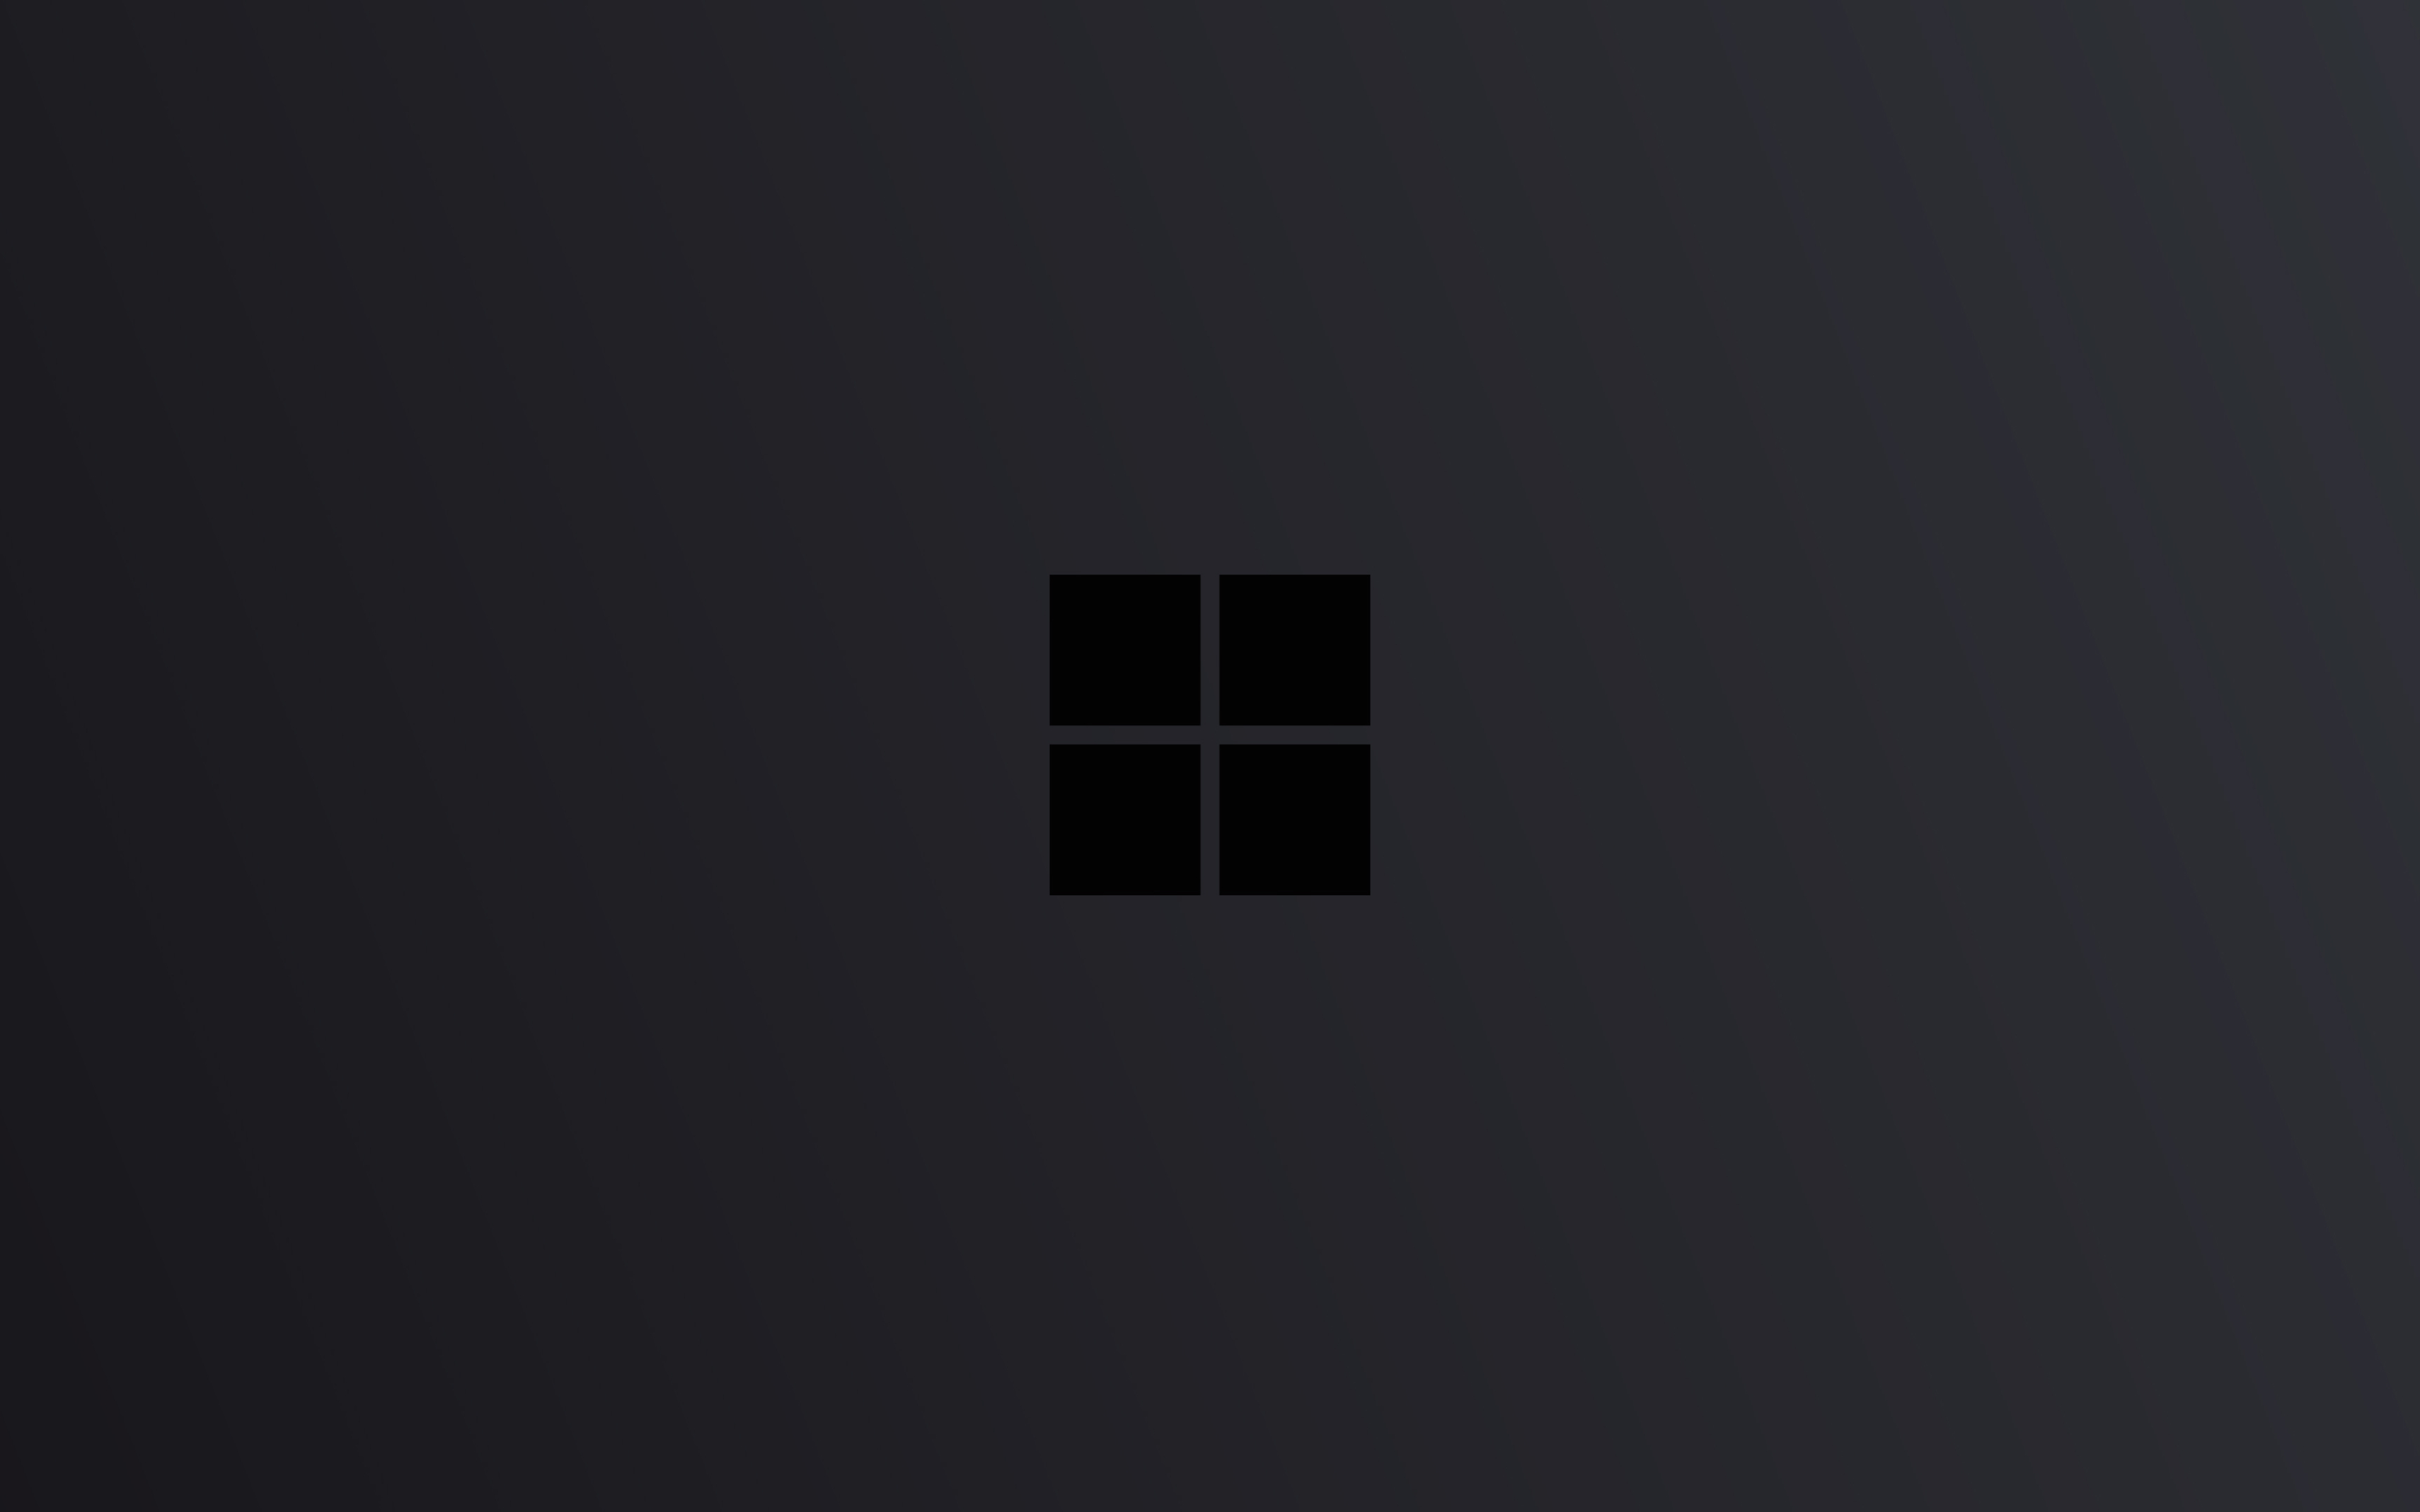 3840x2400 Resolution Windows 10 Logo Minimal Dark Uhd 4k 3840x2400